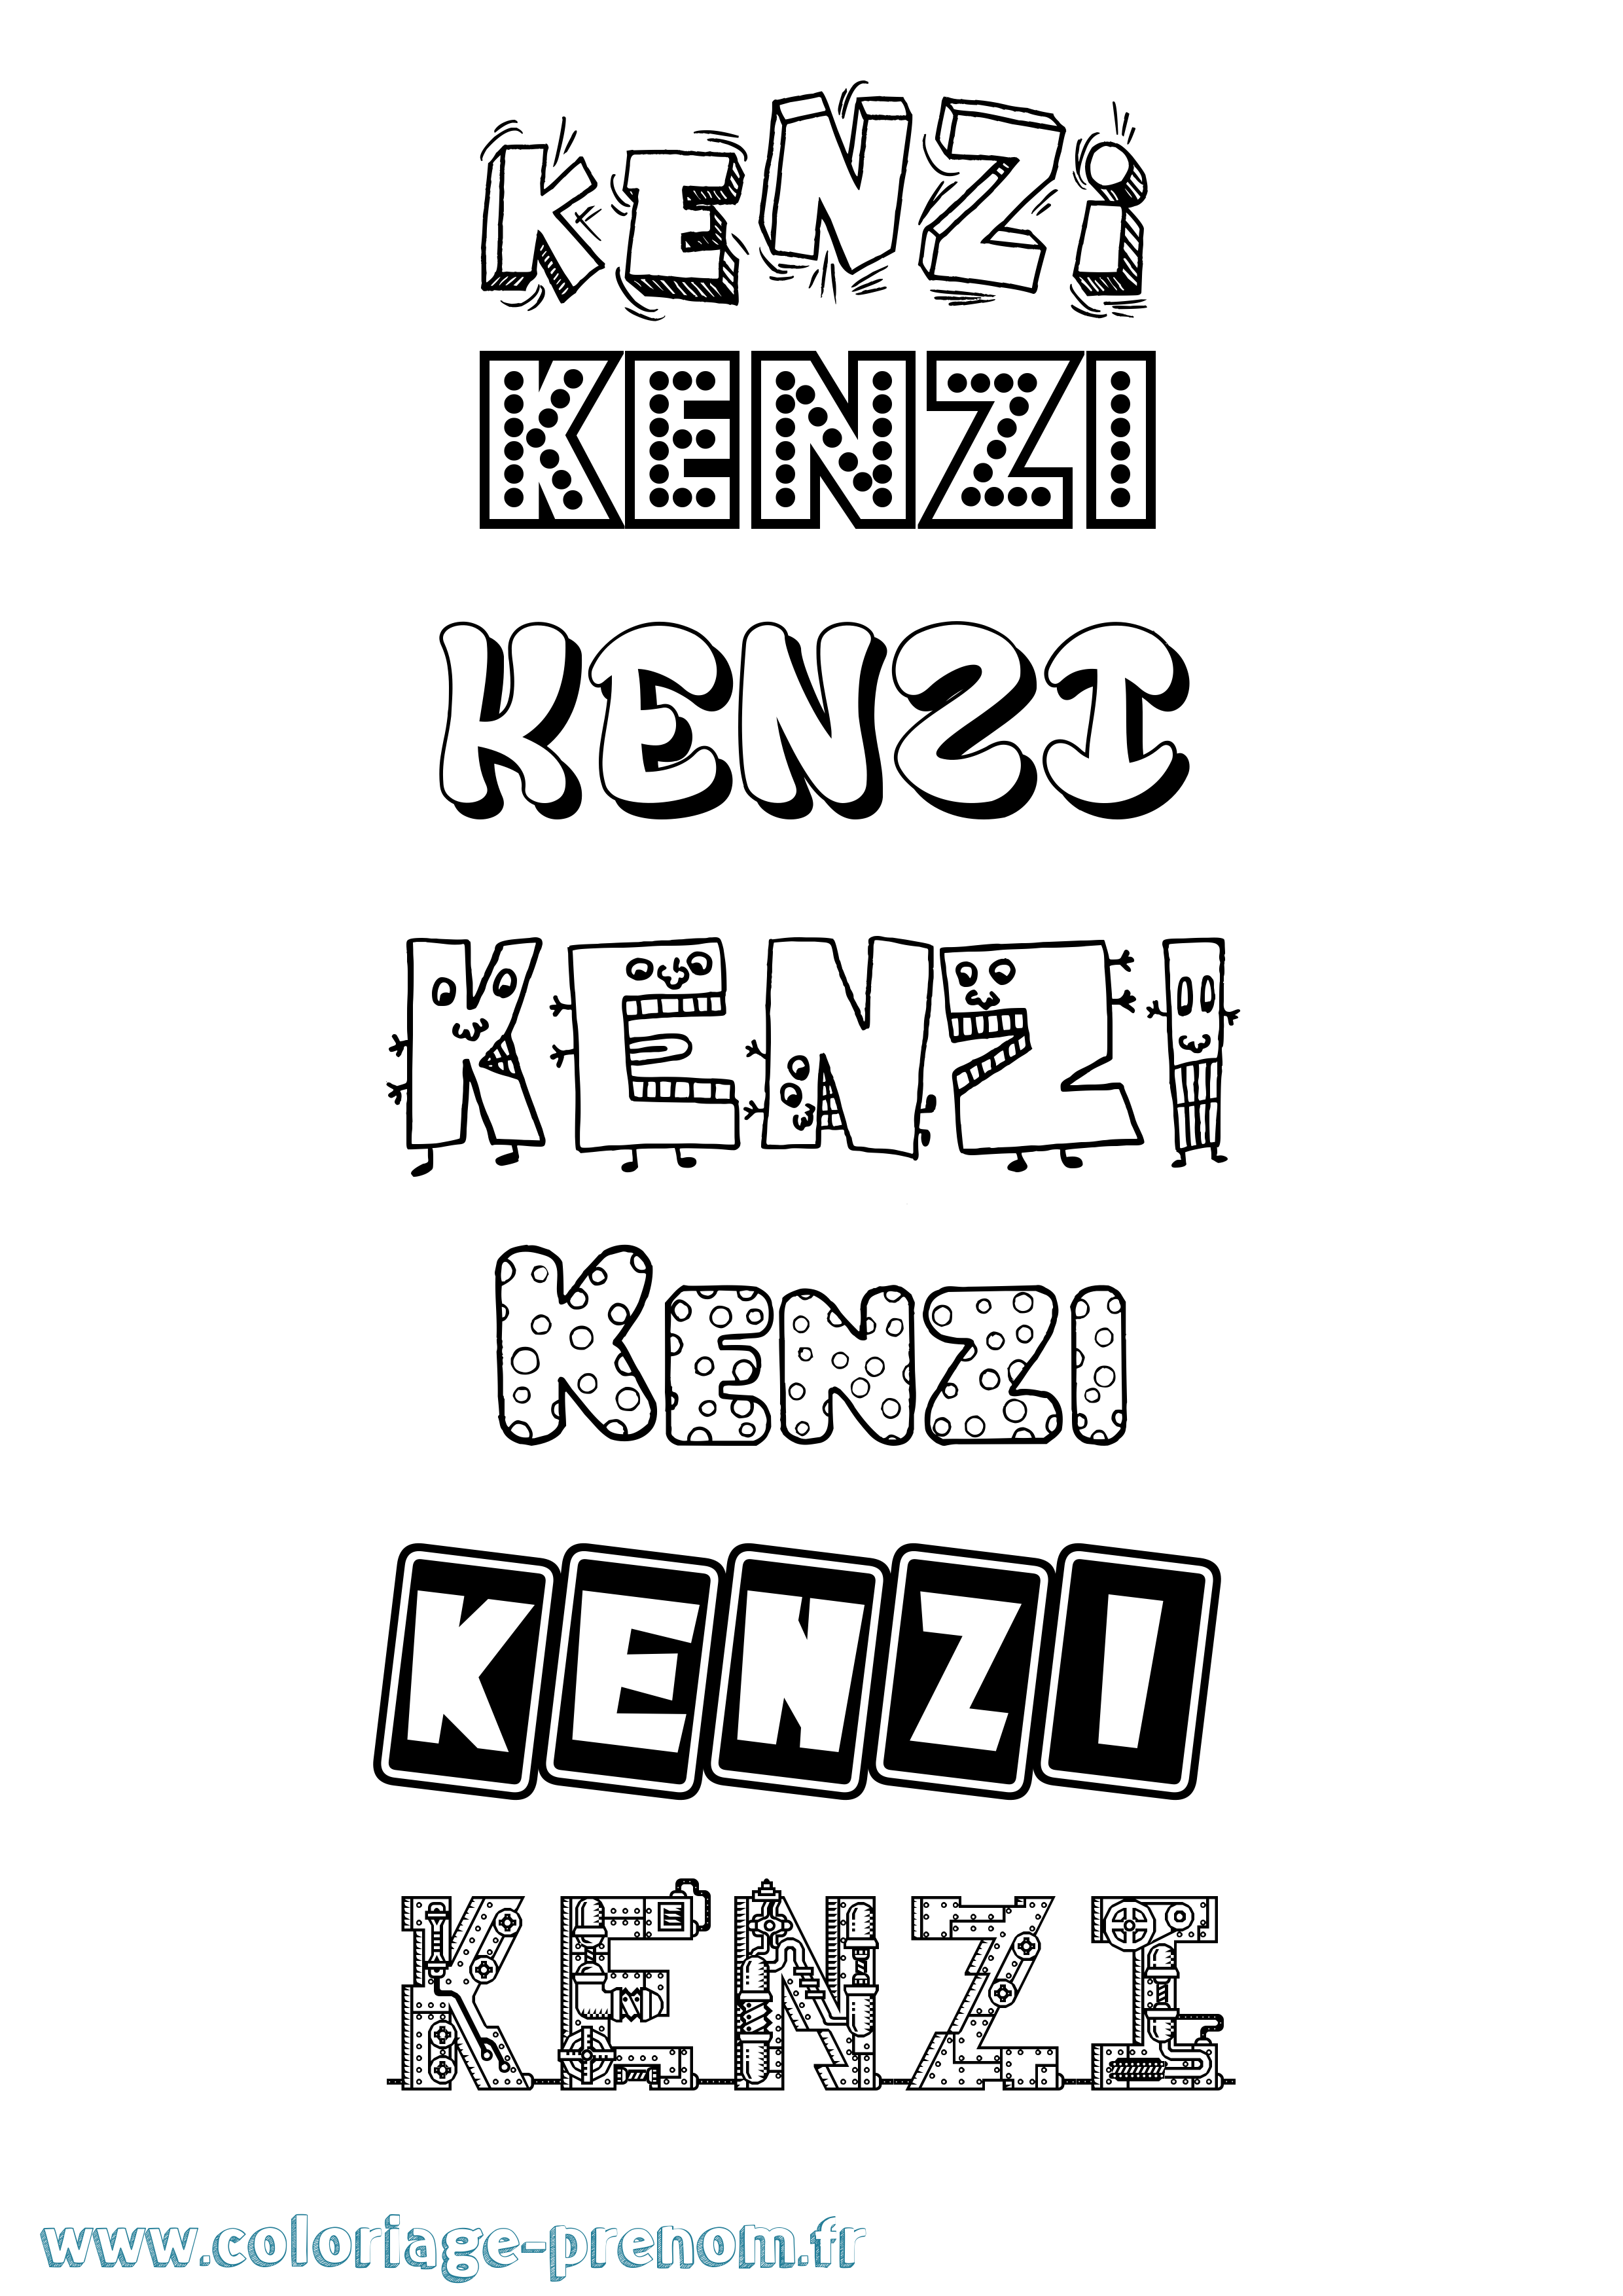 Coloriage prénom Kenzi Fun